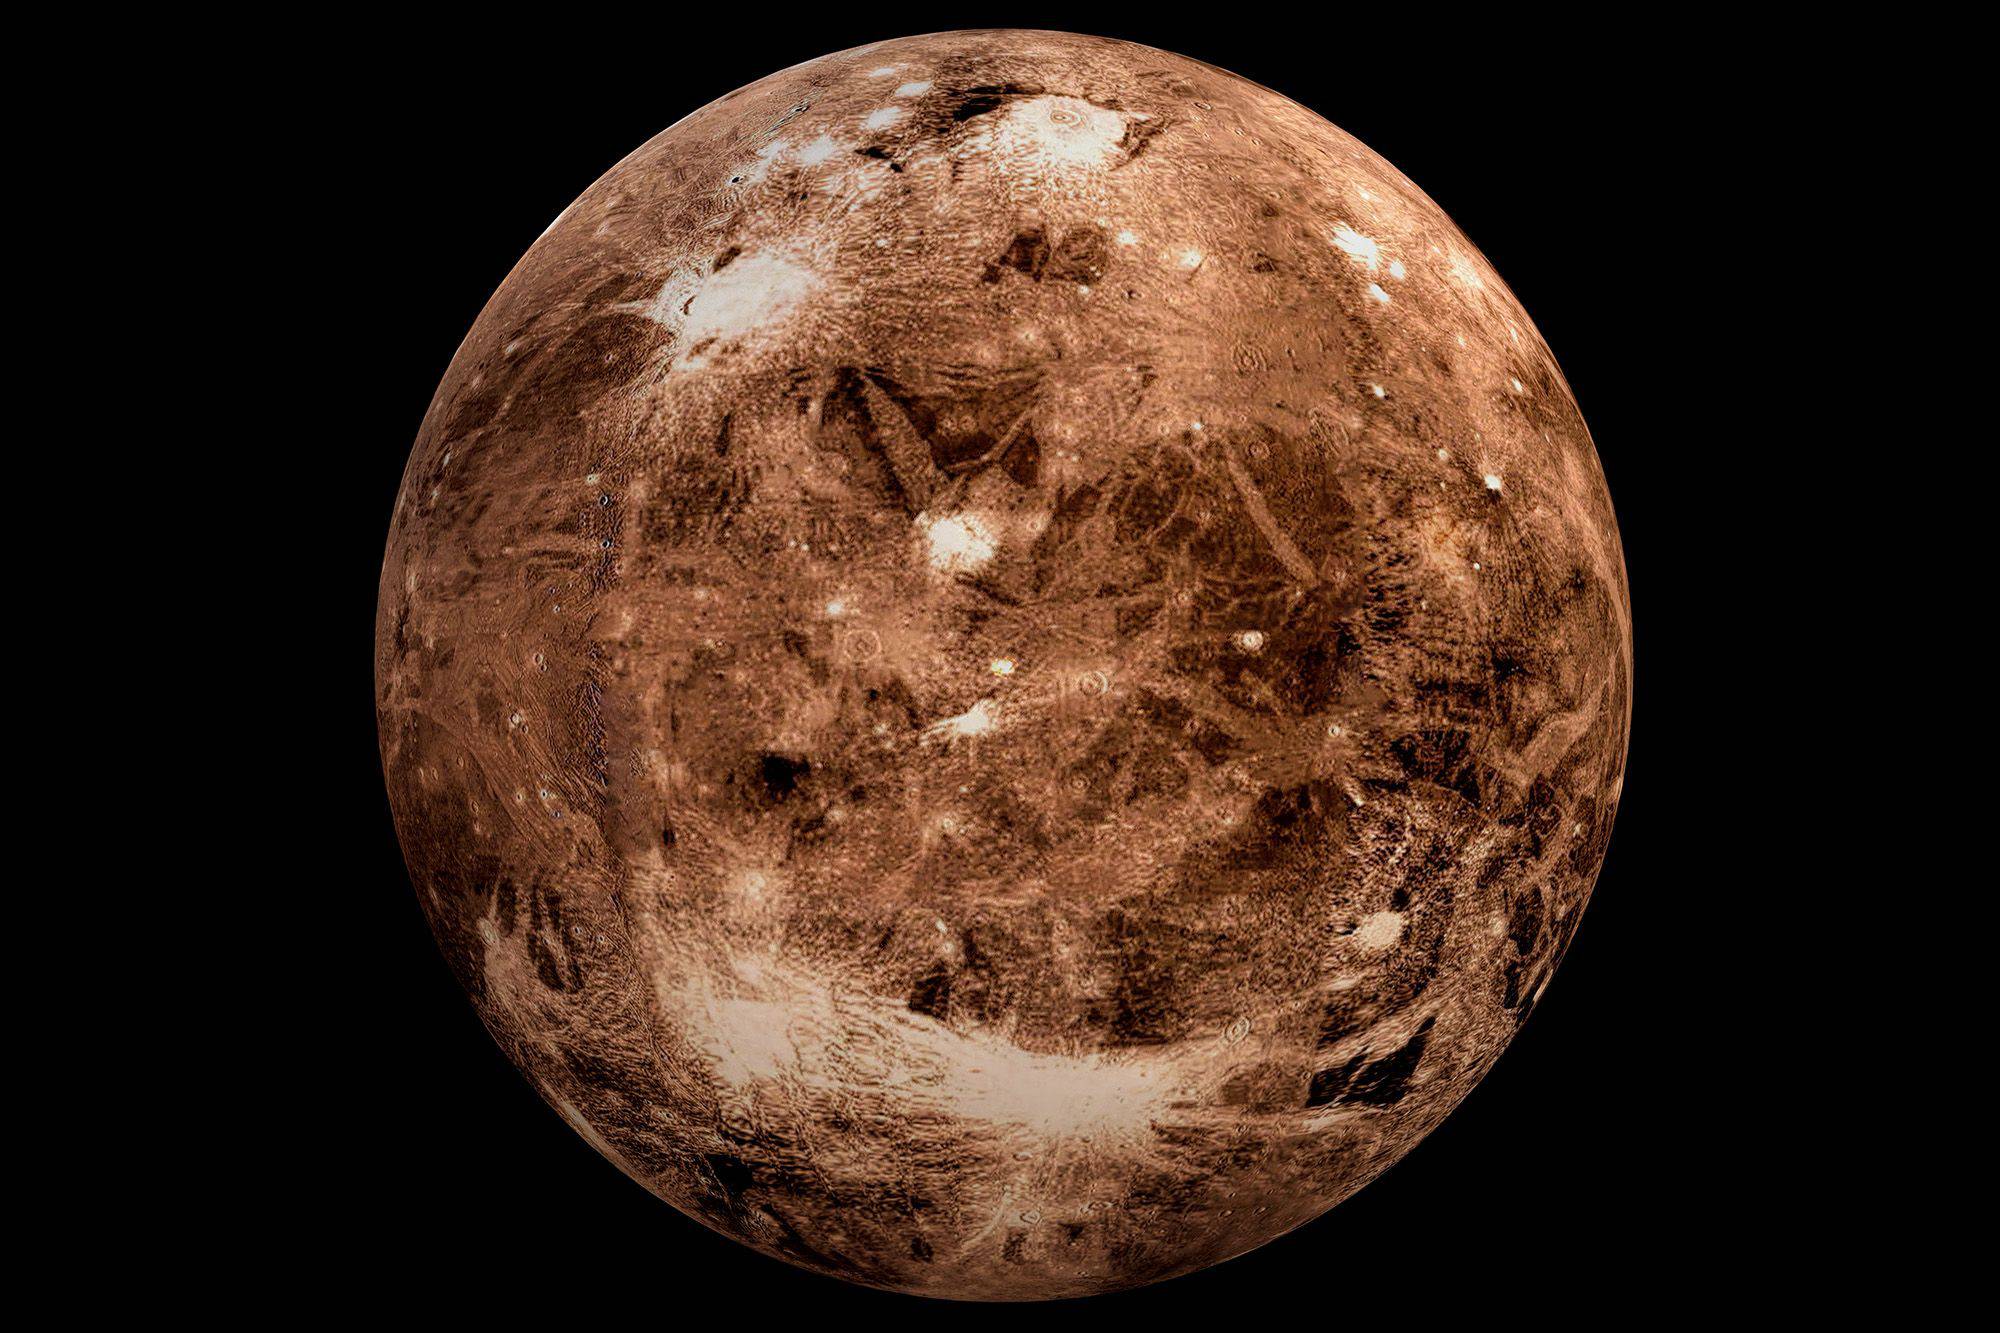 Pluto Type 2